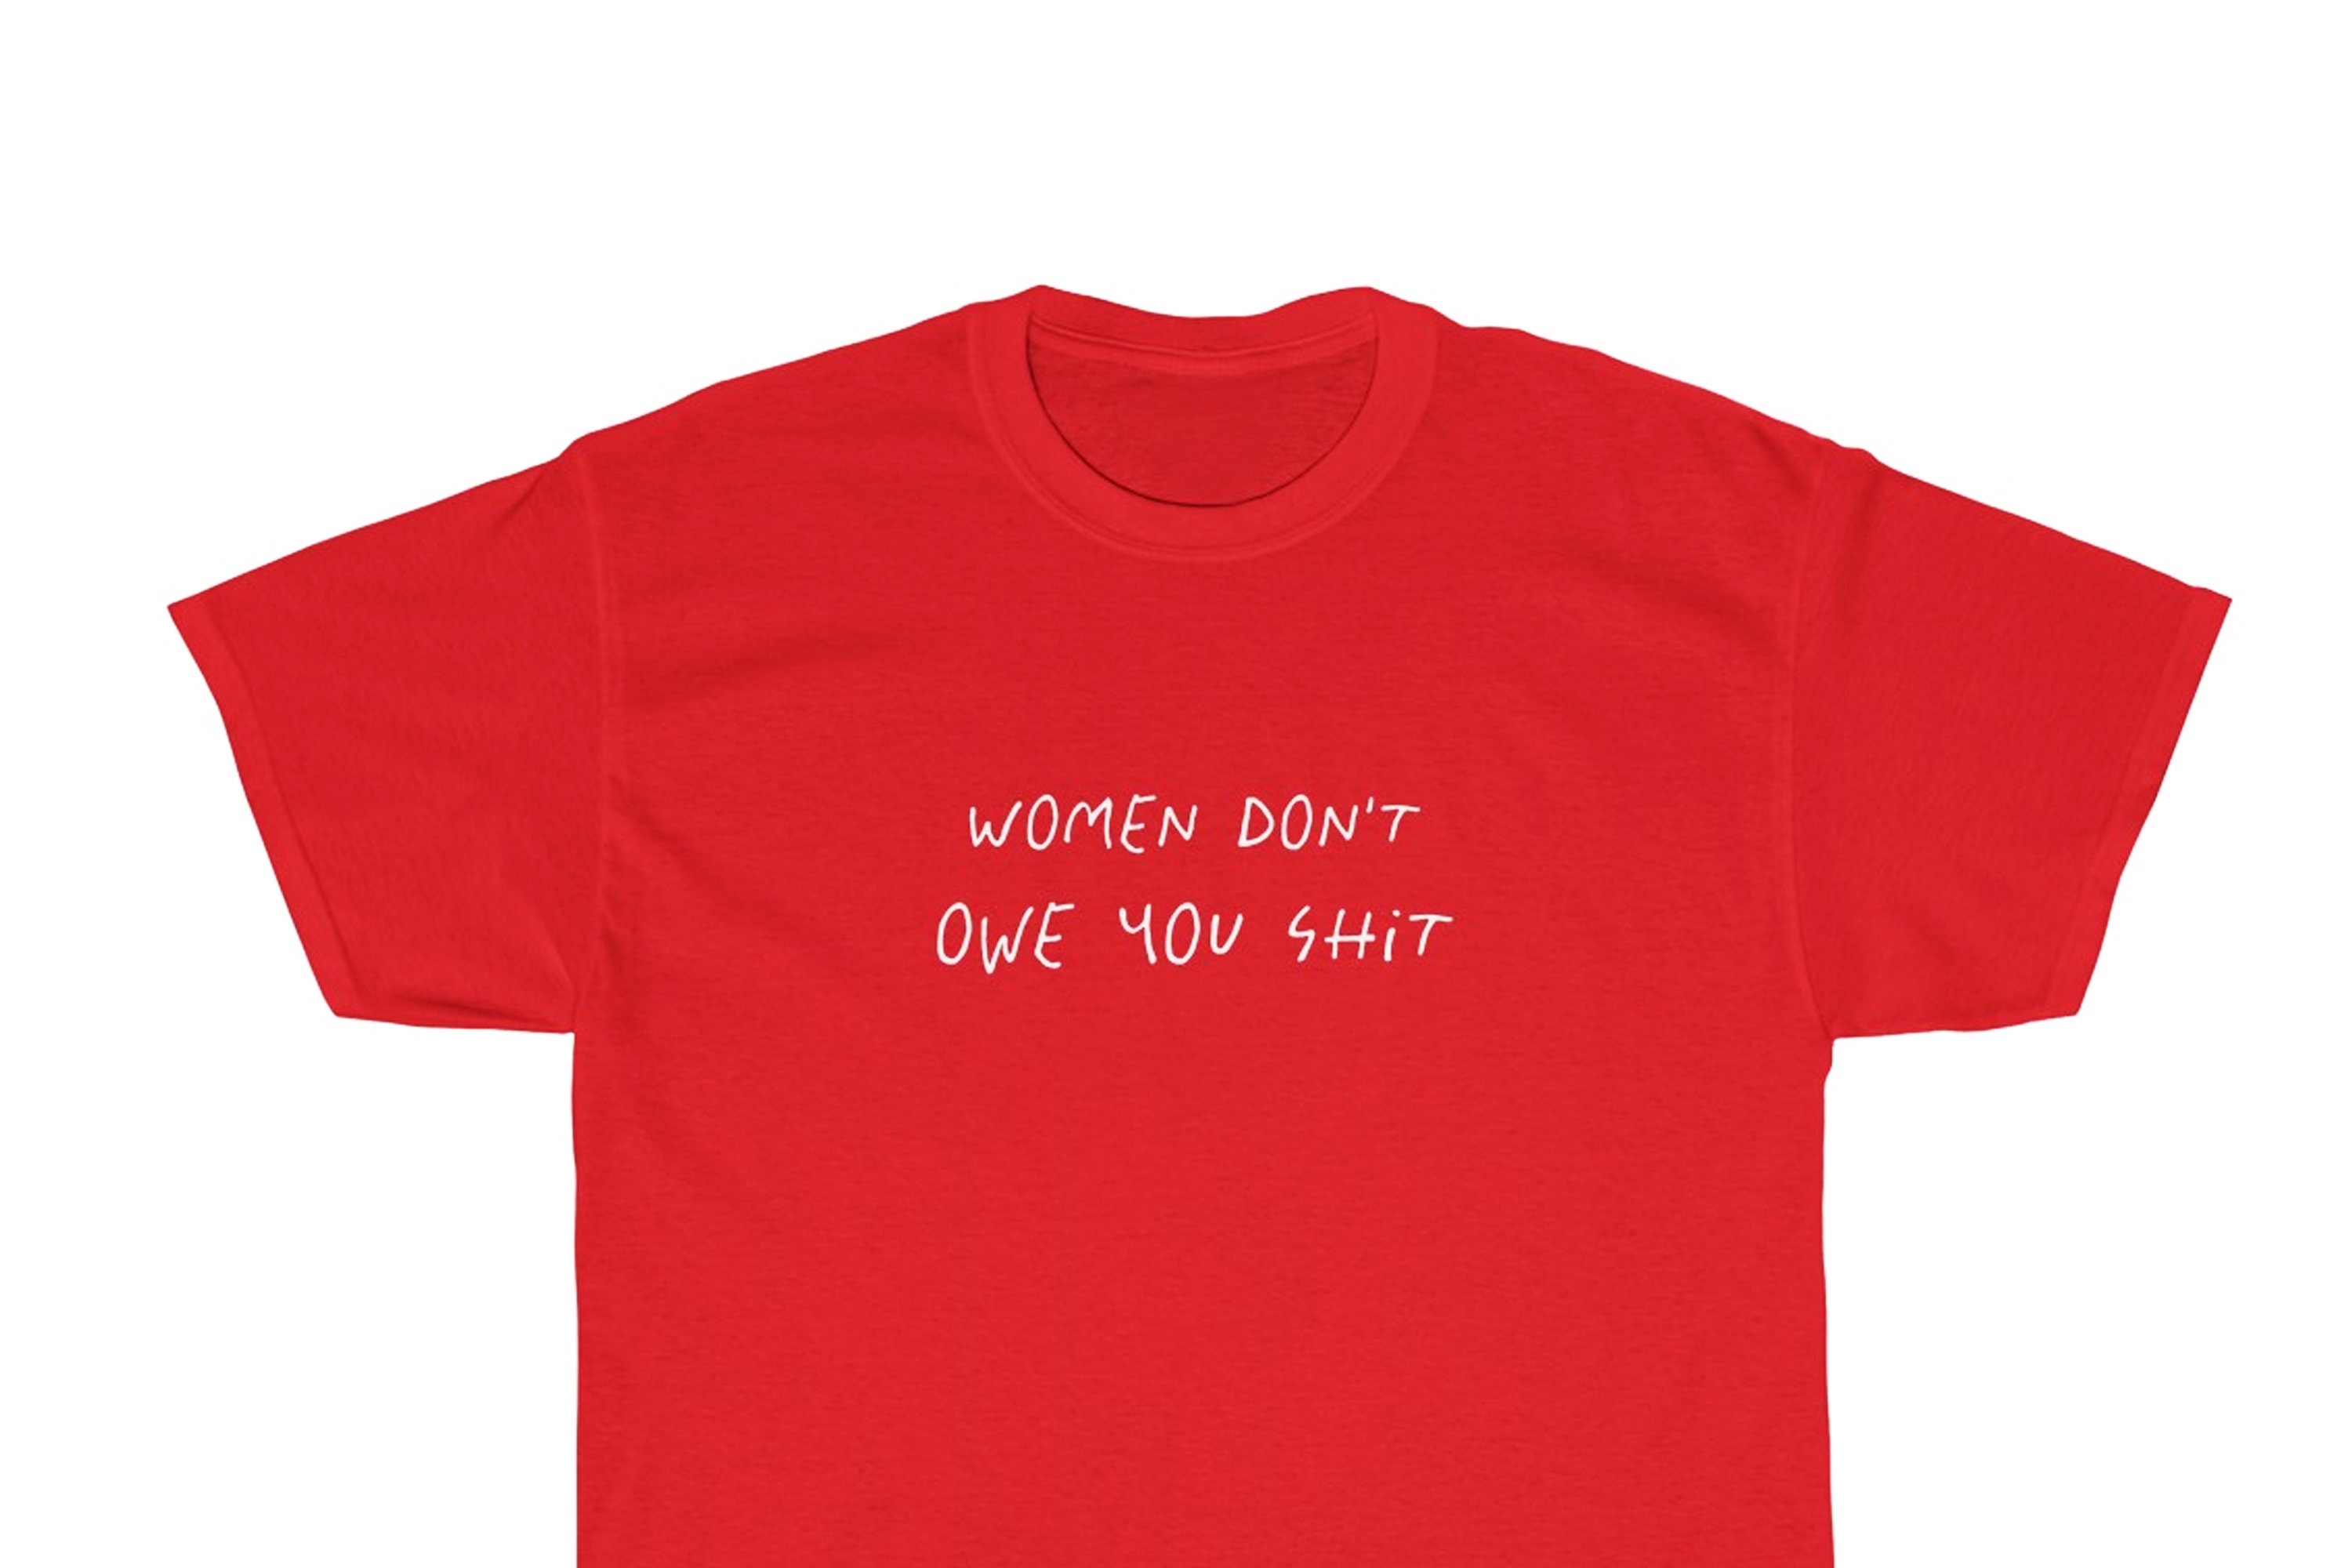 Women Don't Owe You Shit T-shirt Women's Day Shirt - Etsy